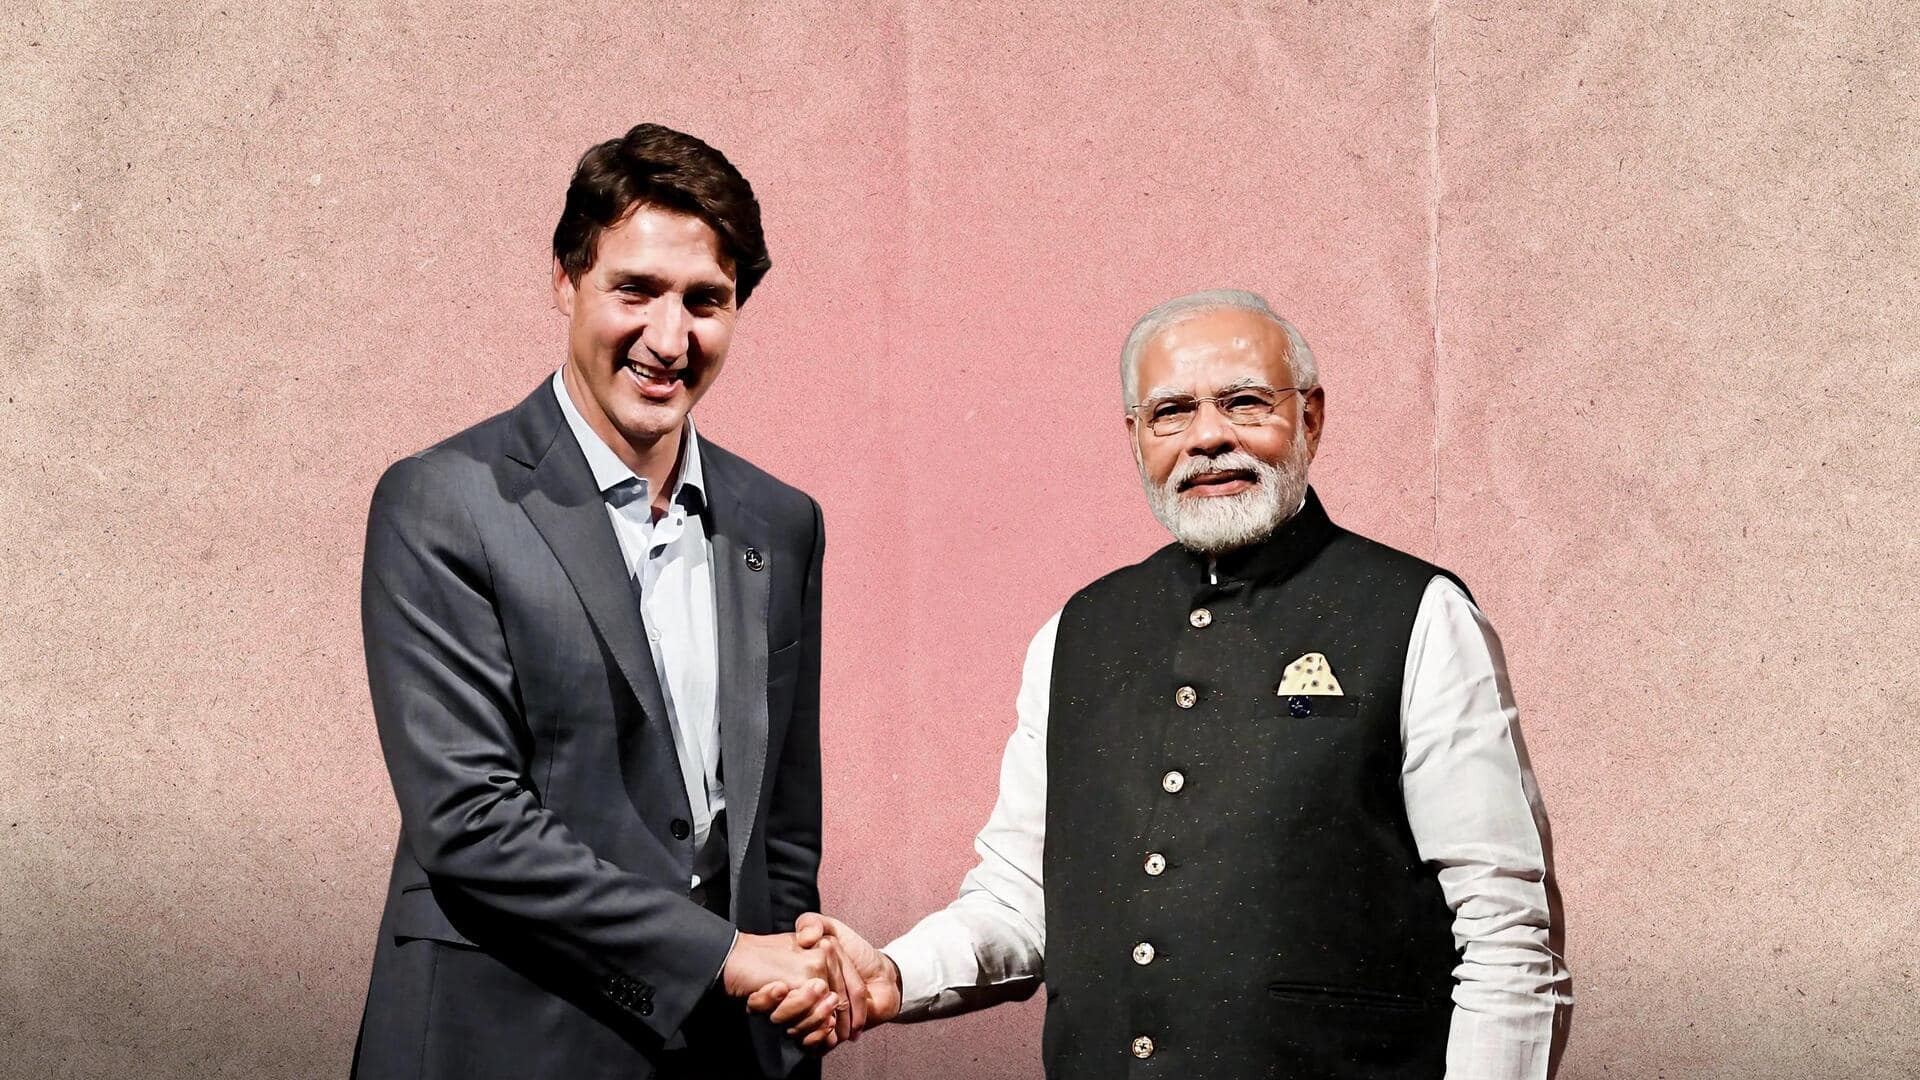 निज्जर हत्याकांड: कनाडा बोला- भारत महत्वपूर्ण, लेकिन आरोप साबित हुए तो बड़ी चिंता का विषय